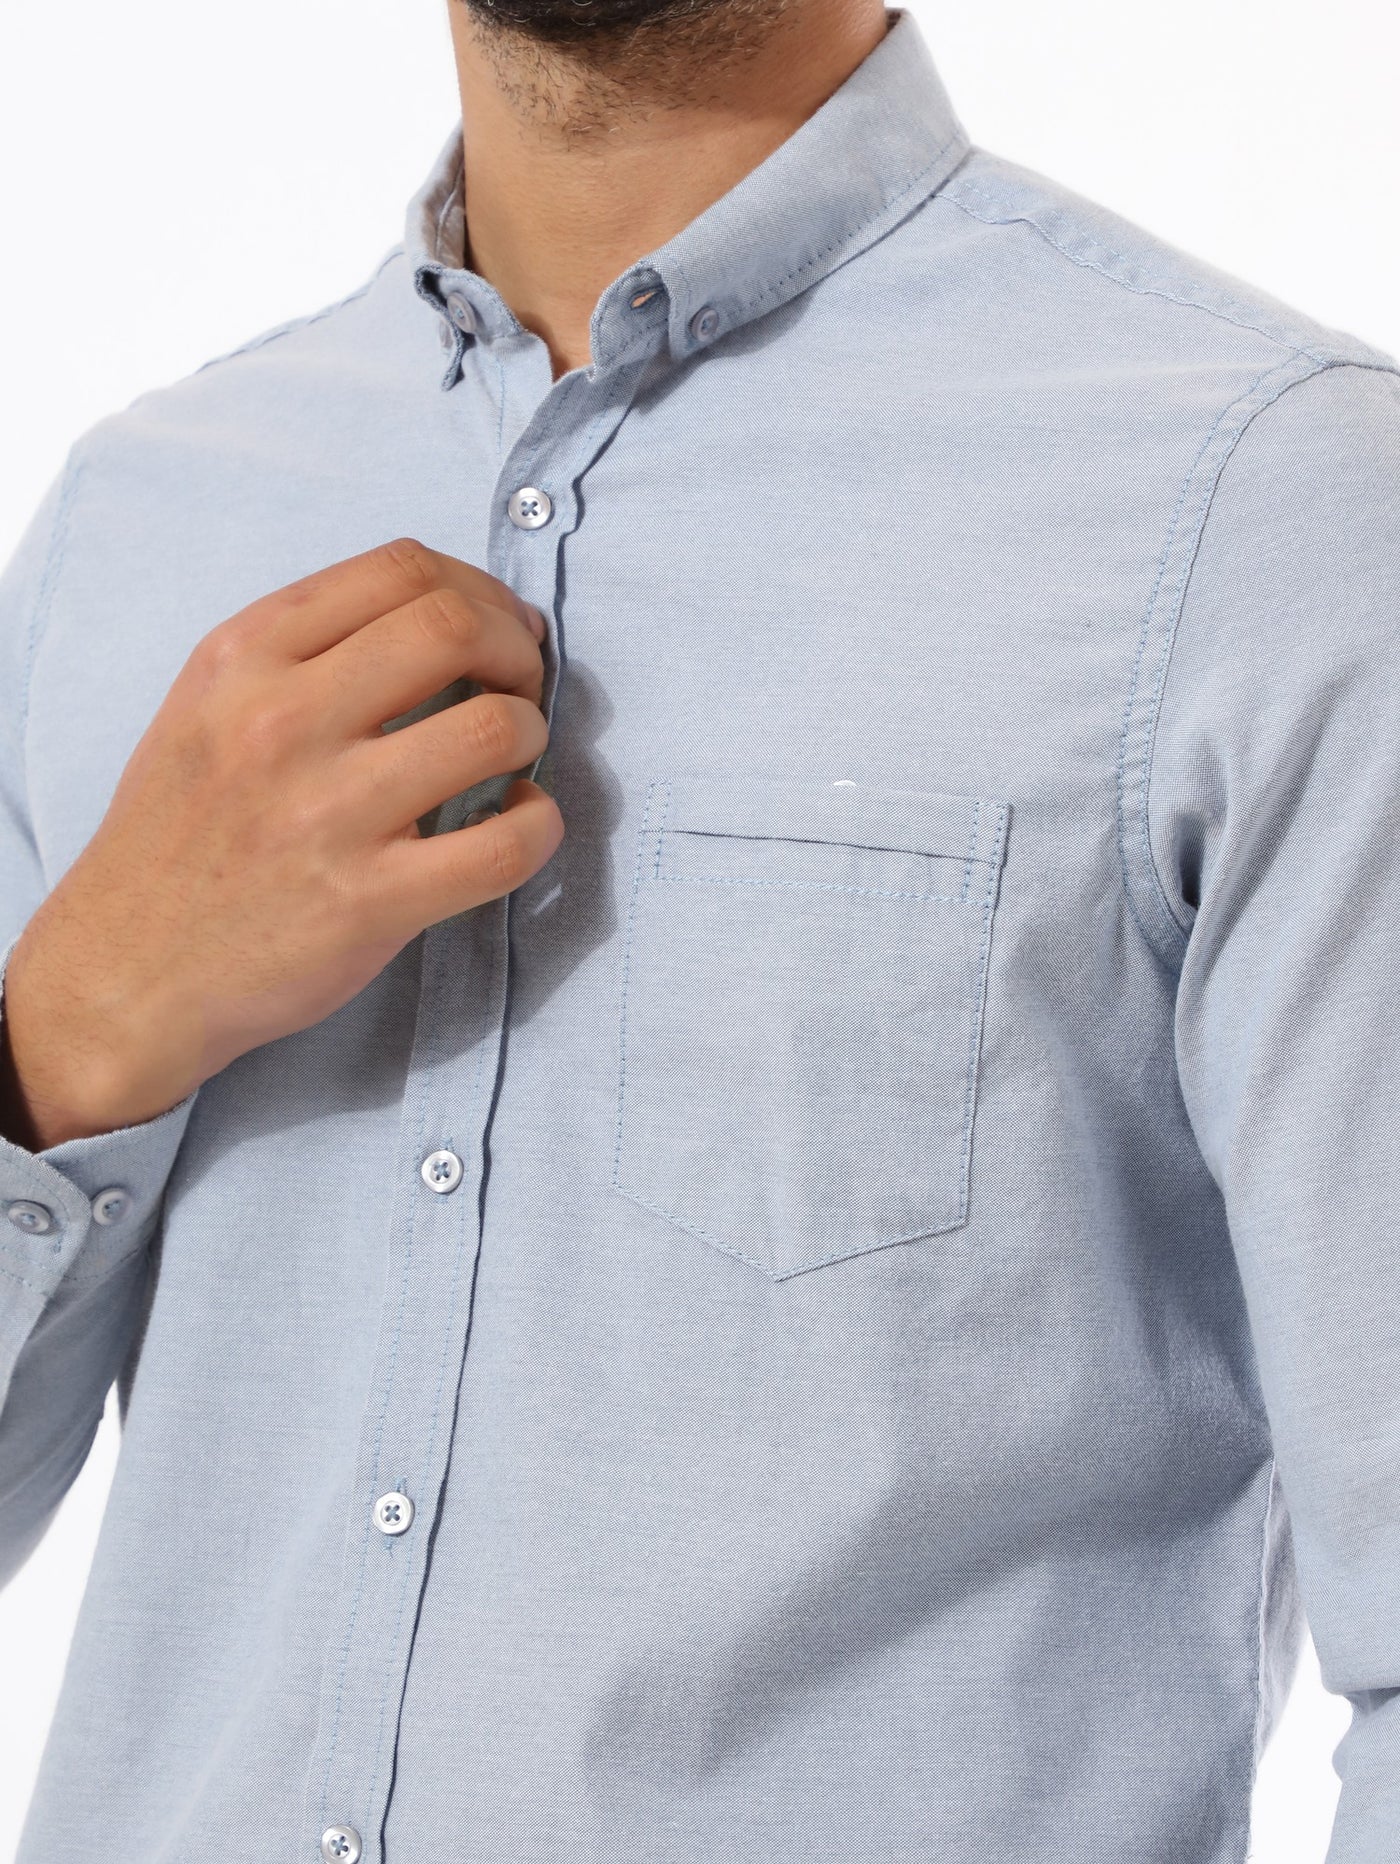 Shirt - Long Sleeves